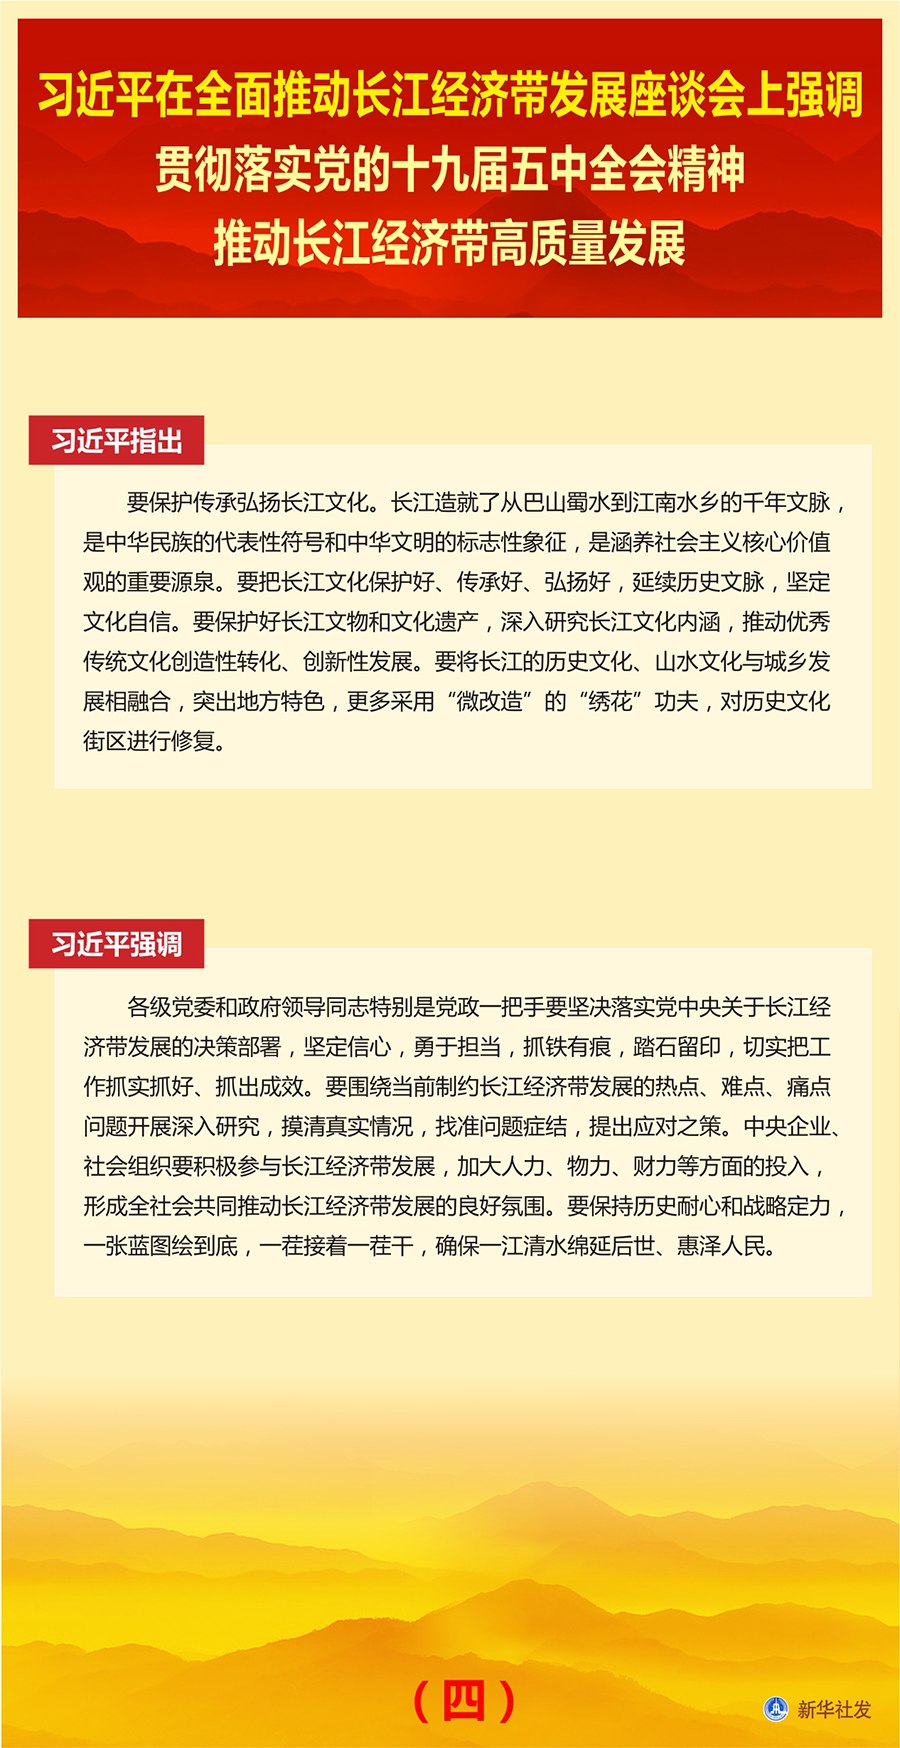 习近平在全面推动长江经济带发展座谈会上发表讲话(图6)